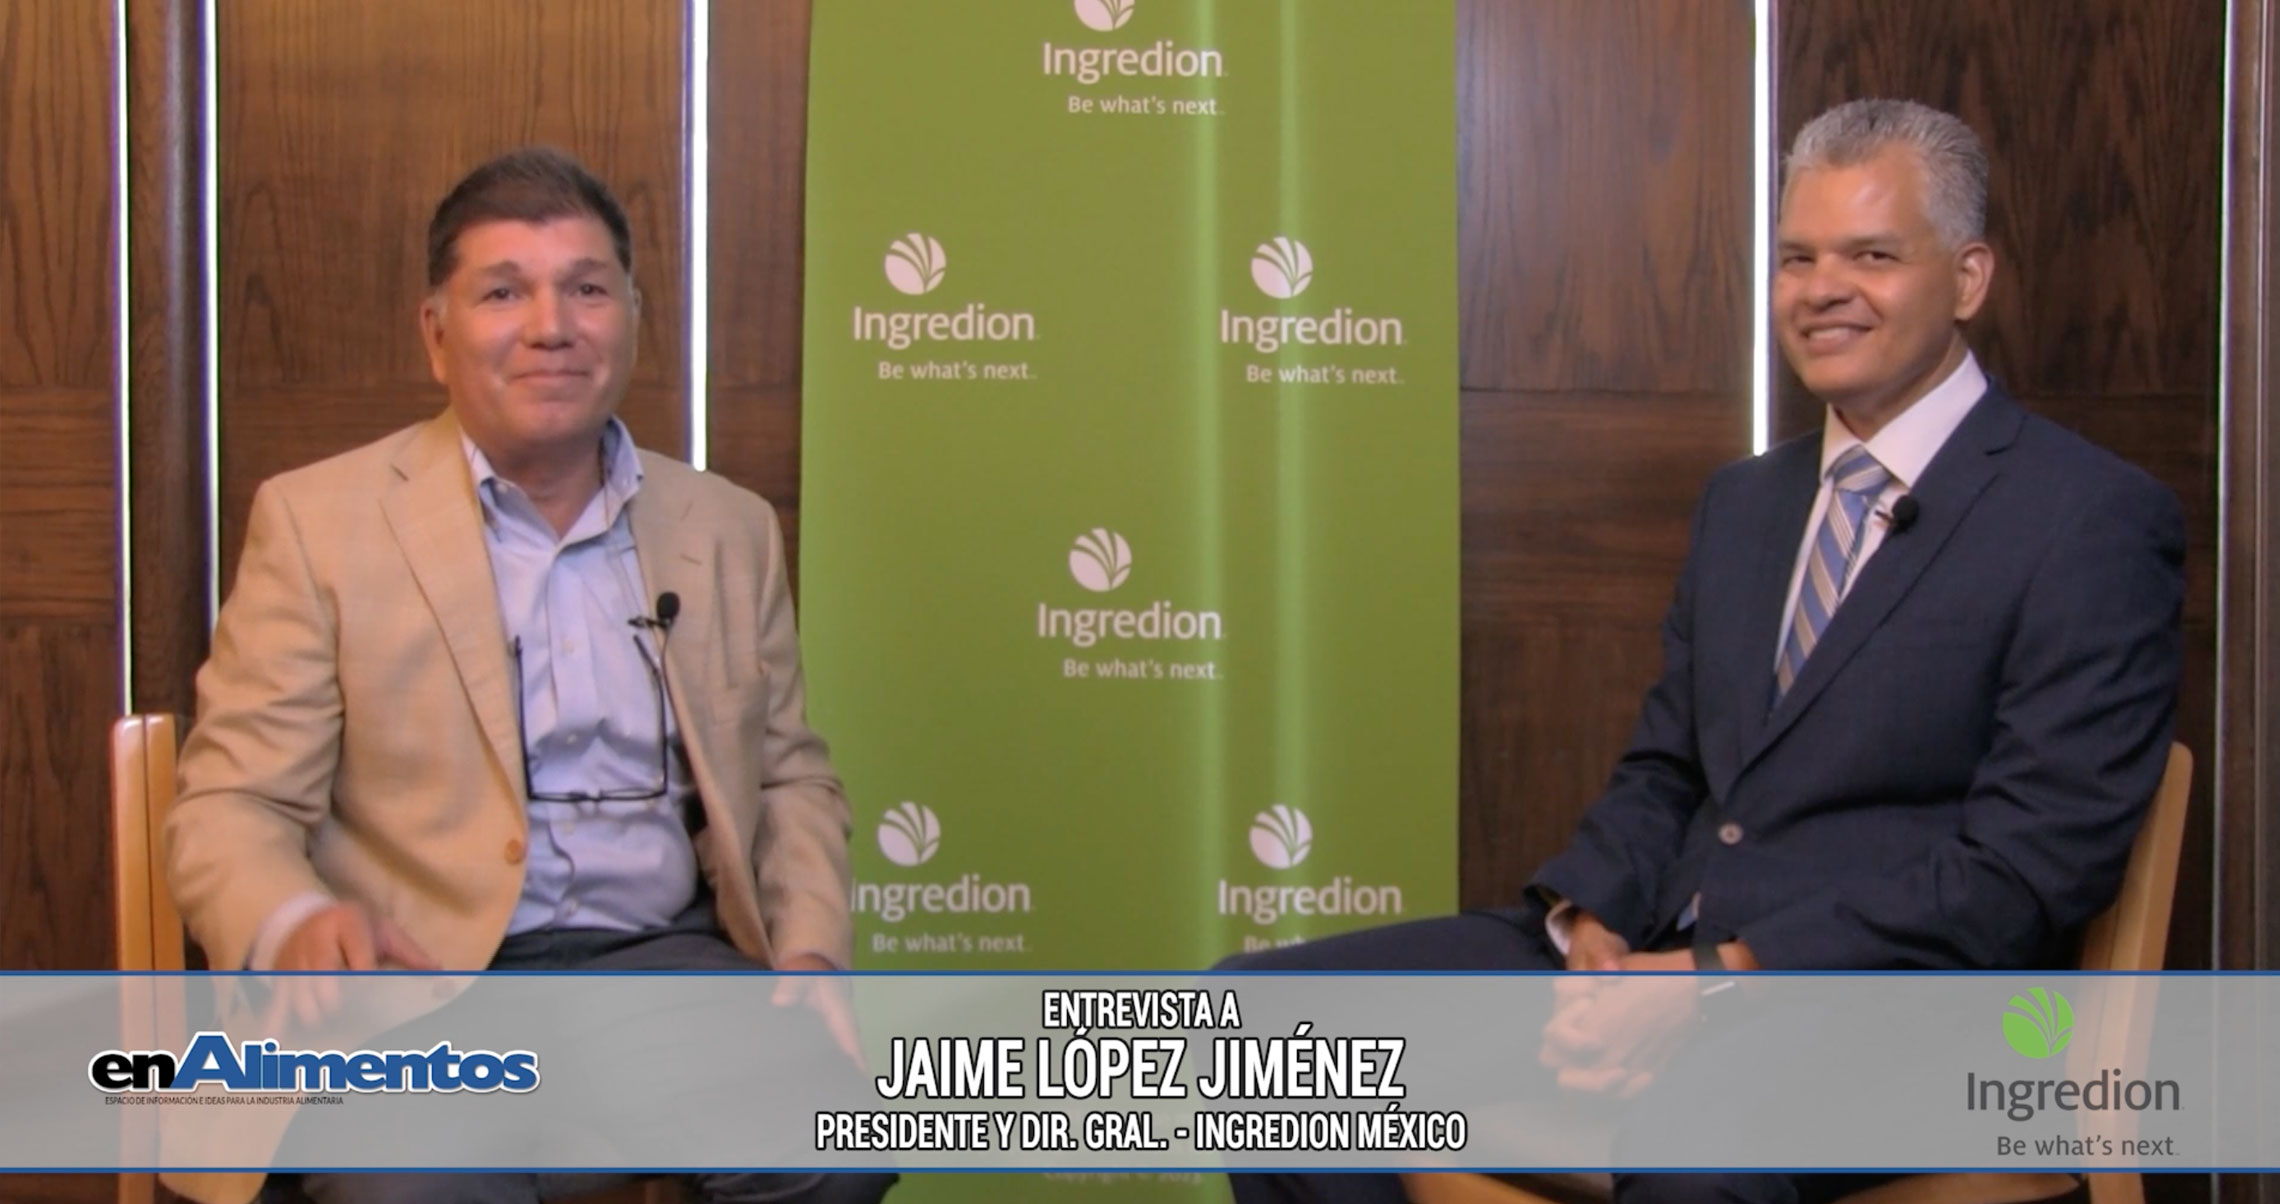 Entrevista a Jaime López Jiménez - Presidente y Dir. Gral. Ingredion México